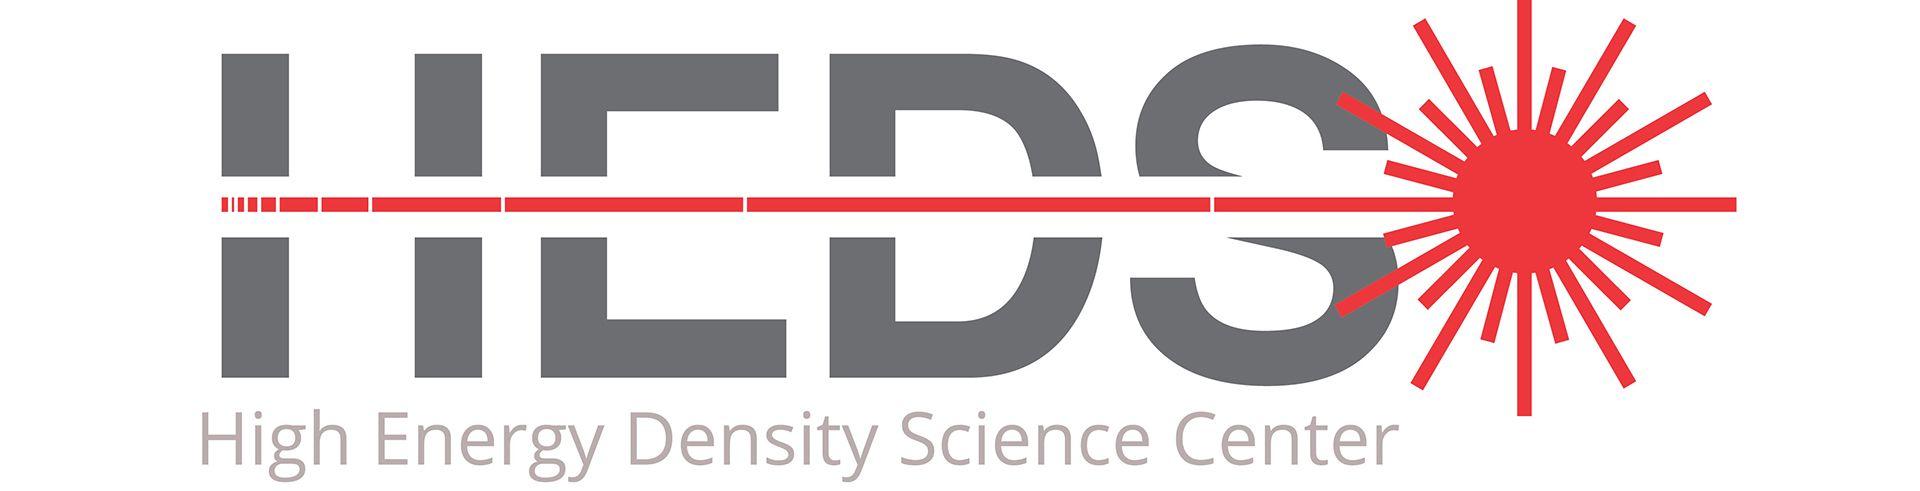 LLNL Logo - High Energy Density Science Center |